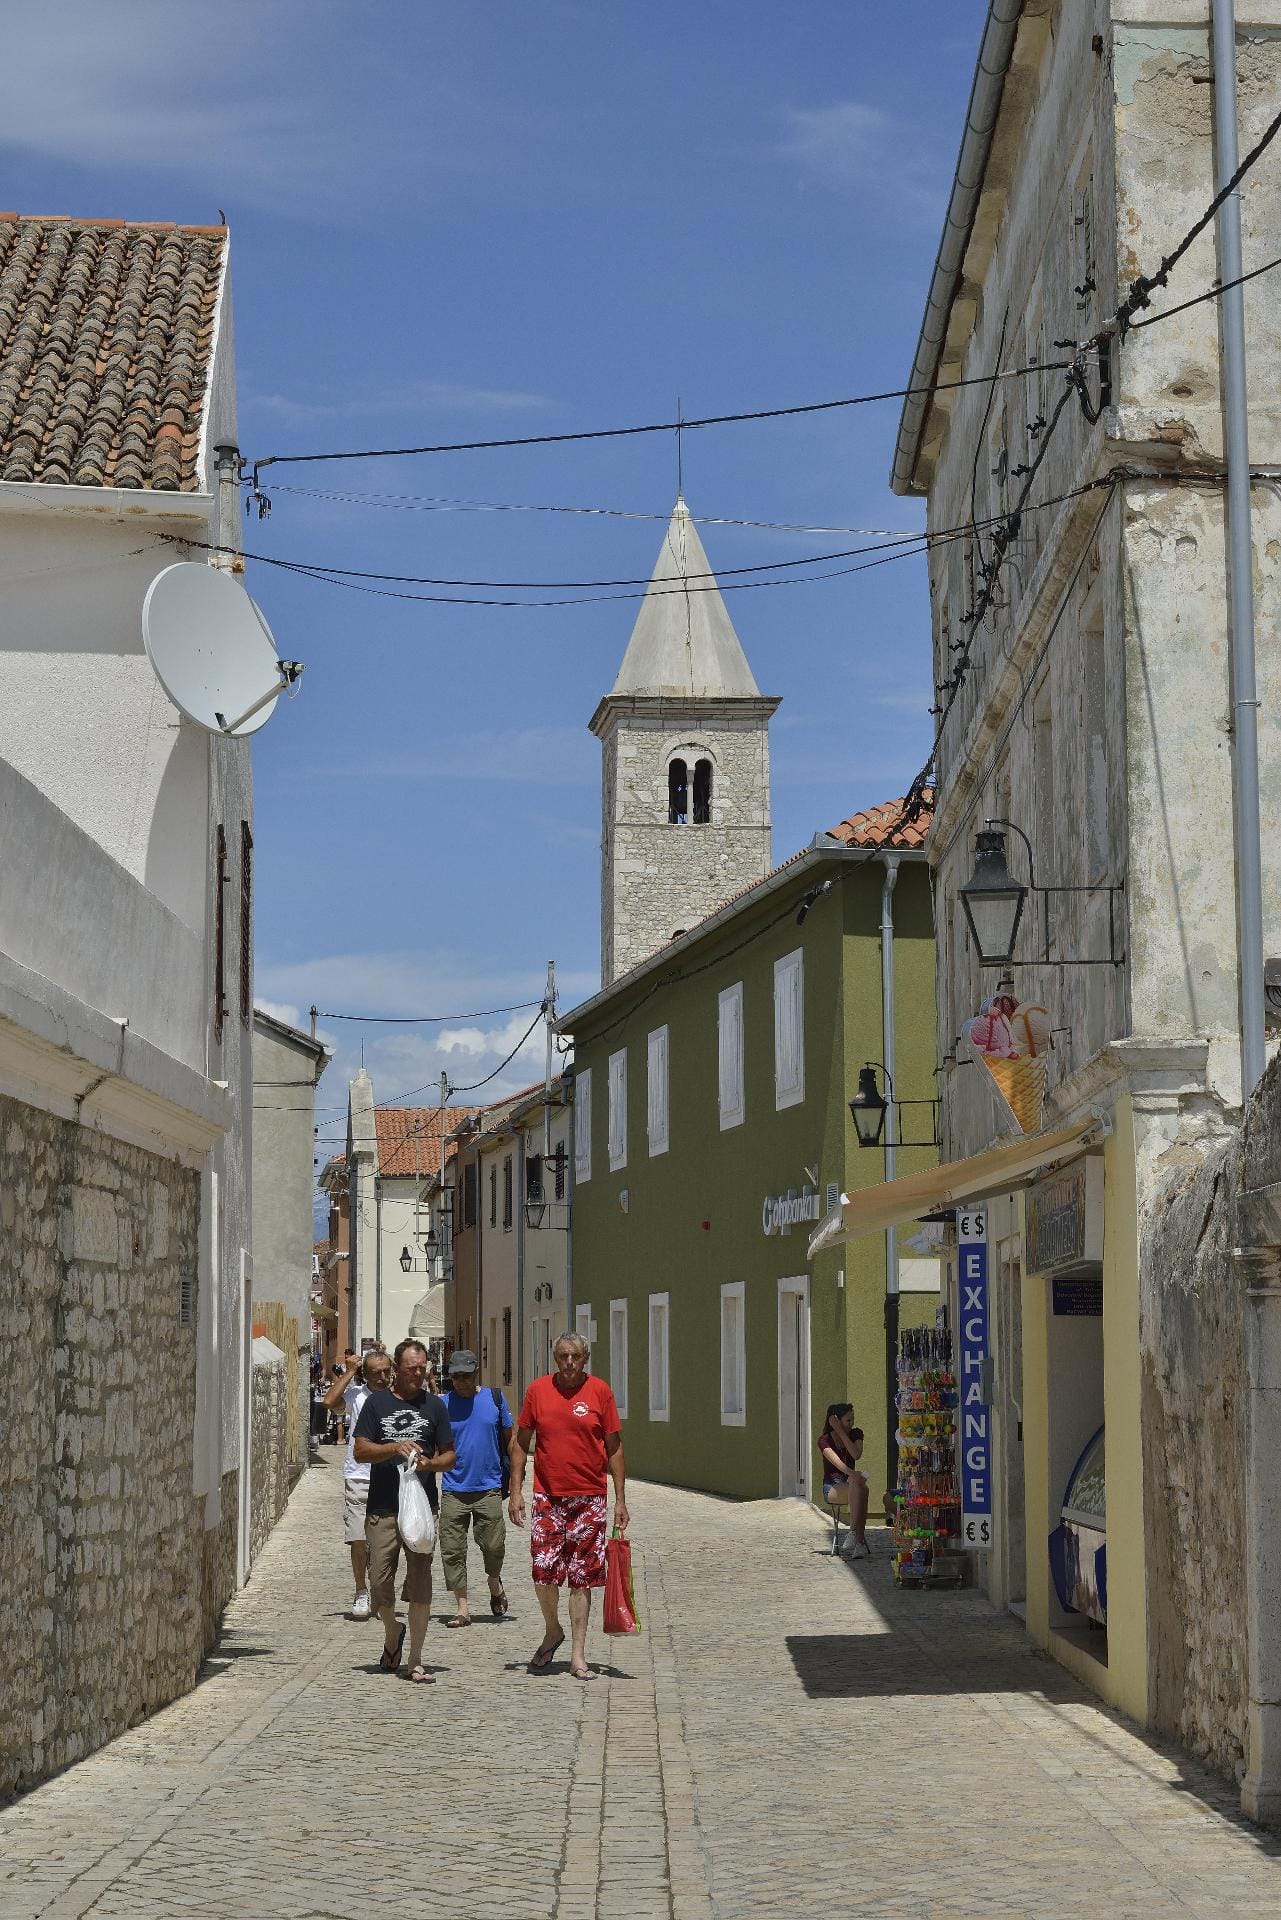 Die 1560-Seele-Gemeinde Nin liegt an einer seichten Salzwasserlagune, 14 Kilometer nordwestlich der Kreisstadt Zadar, und ist eine der ältesten Städte an der kroatischen Adria.